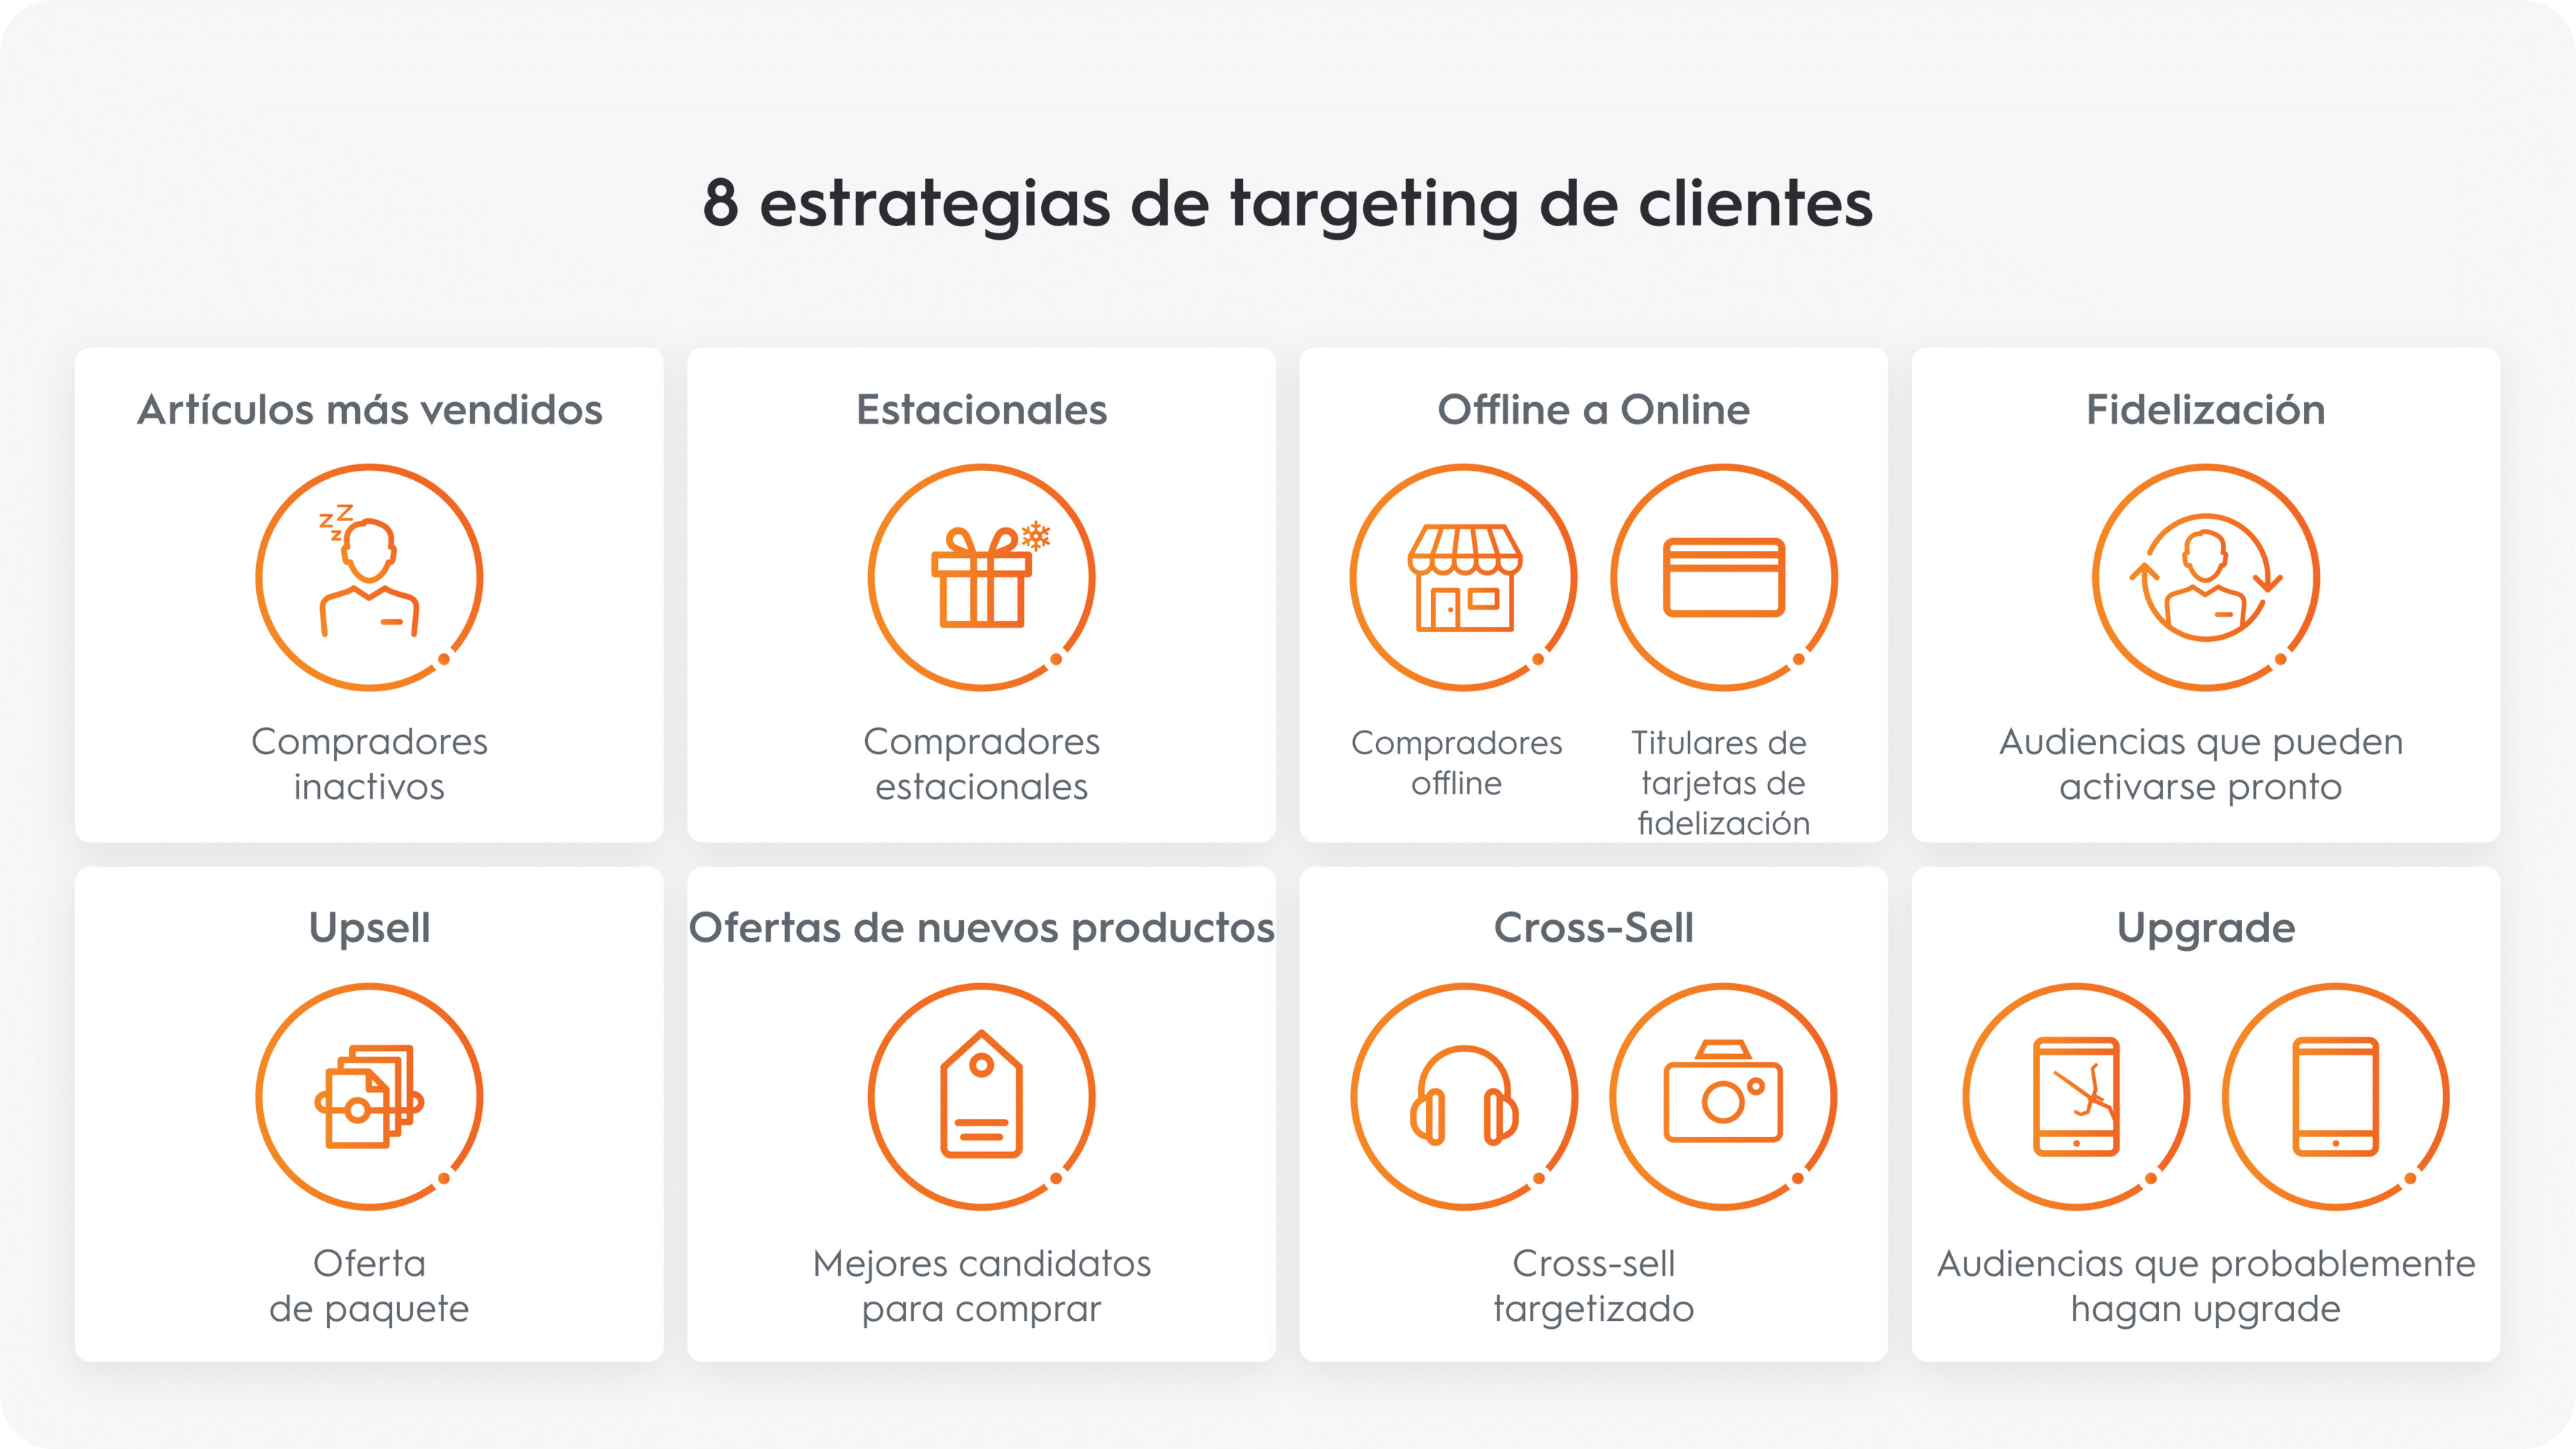 8 strategies de targeting de clientes